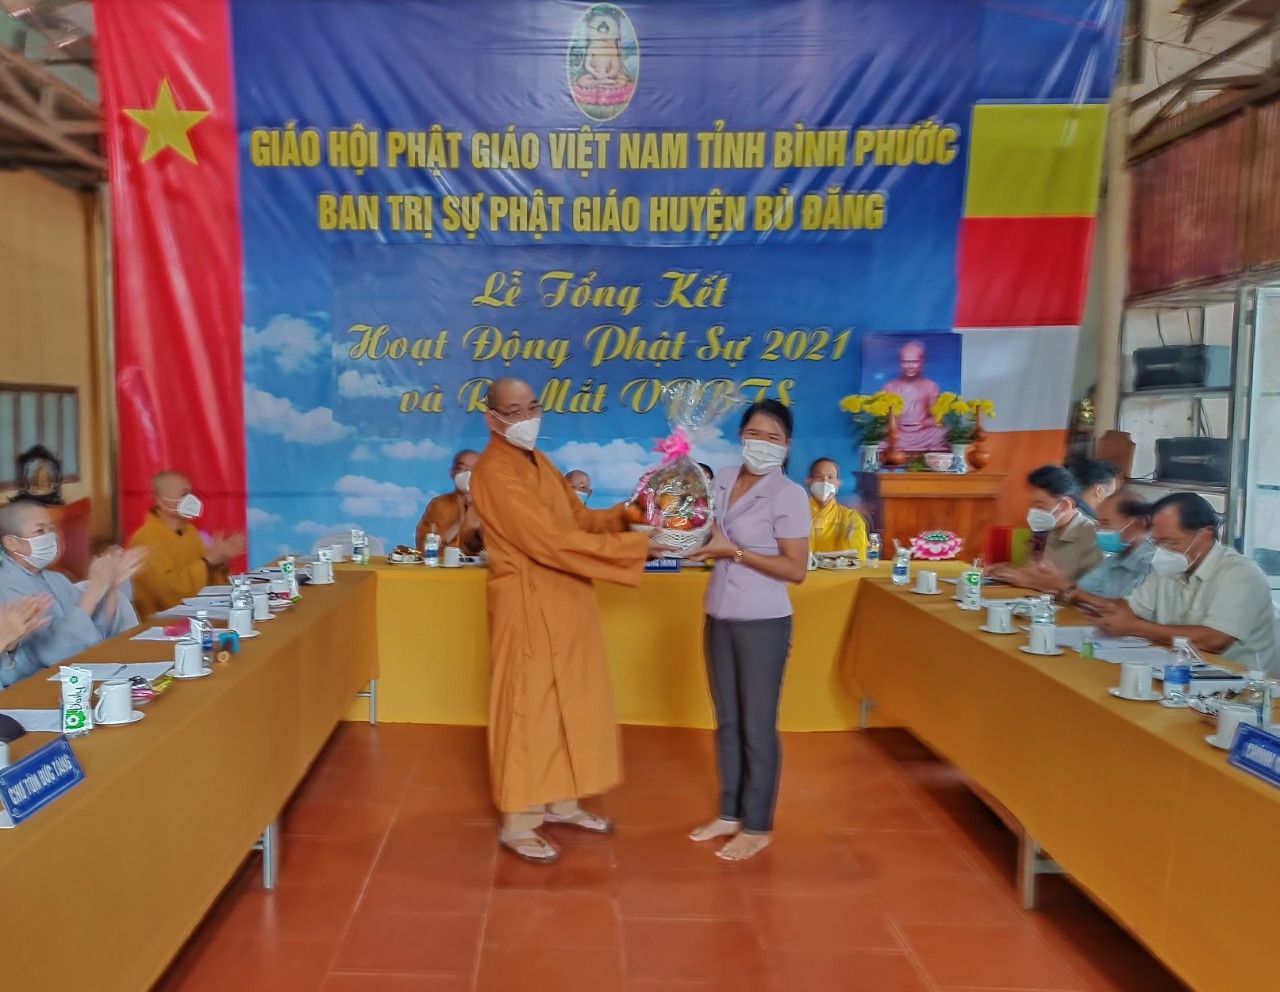 Phó chủ tịch UBND huyện Thị Diệu Hiền tặng quà chúc mừng Ban trị sự Phật giáo huyện Bù Đăng